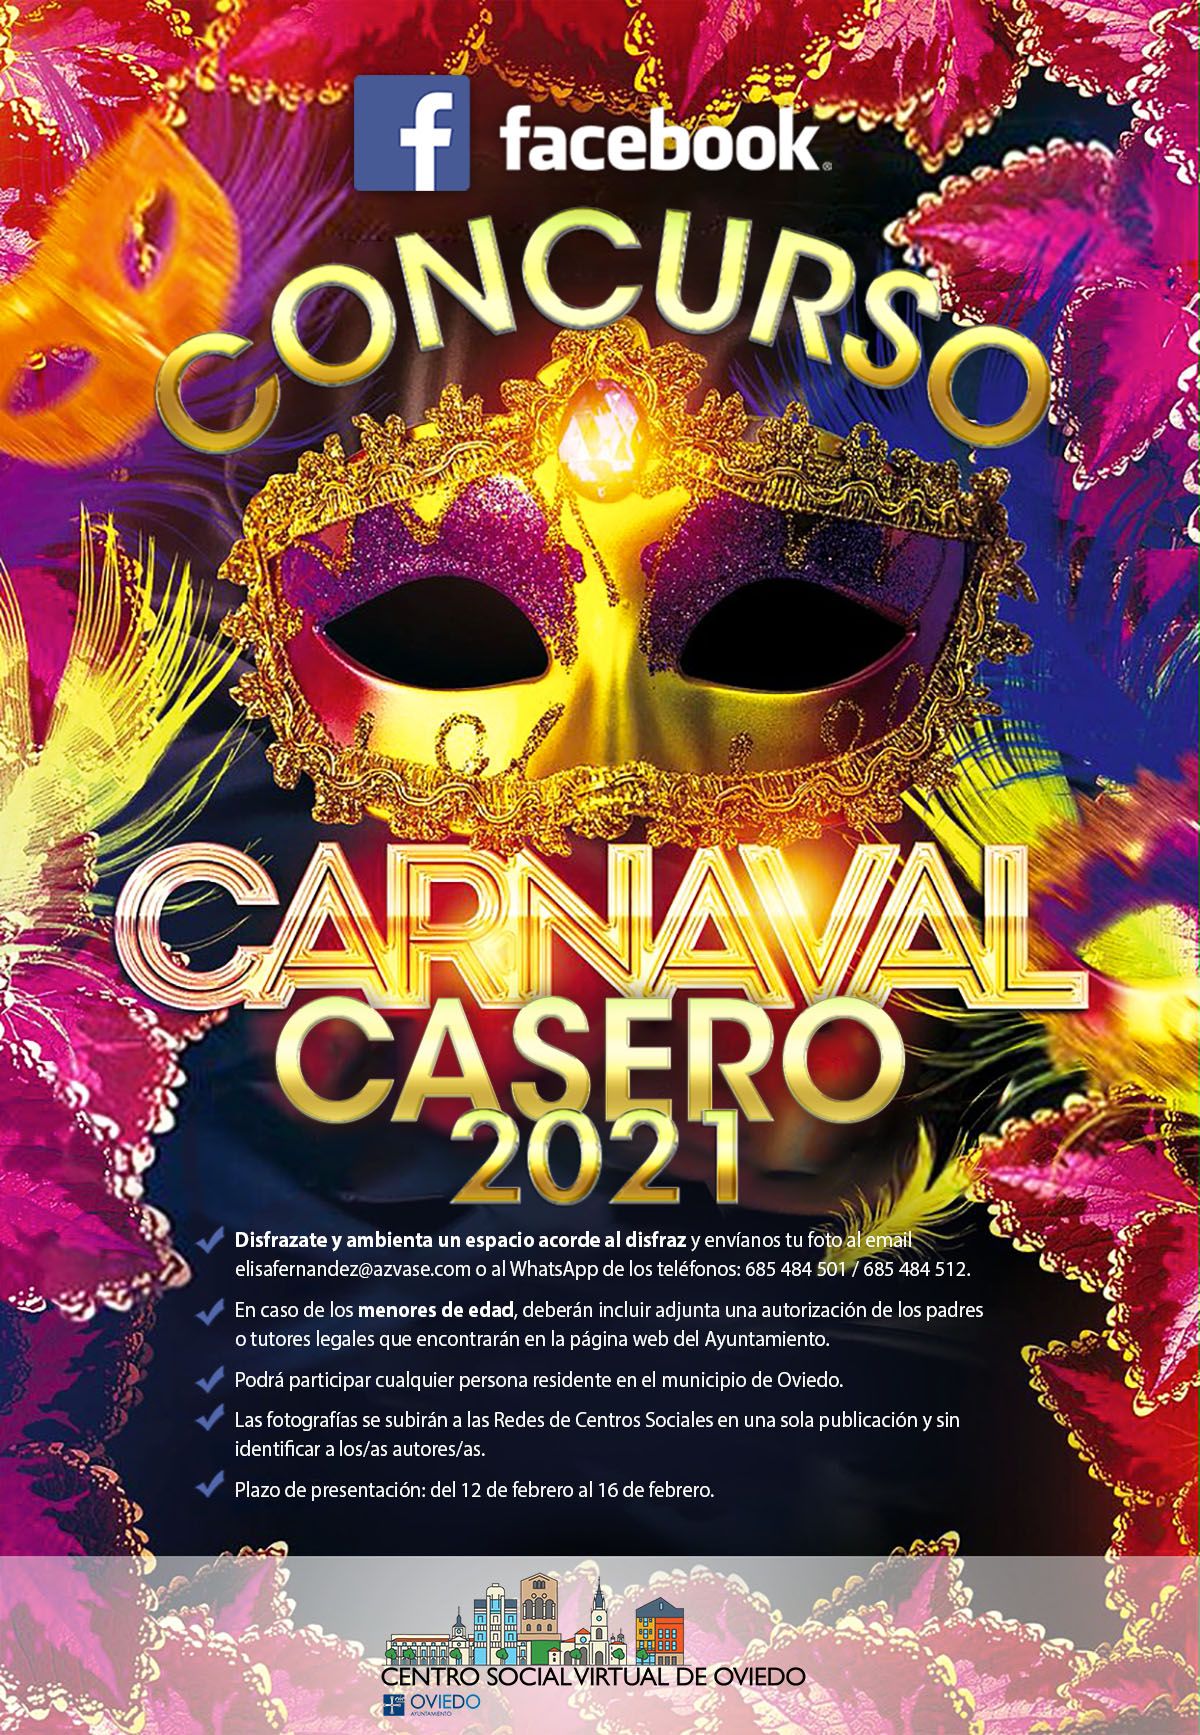 Concurso Carnaval en FACEBOOK de Centros Sociales de Oviedo